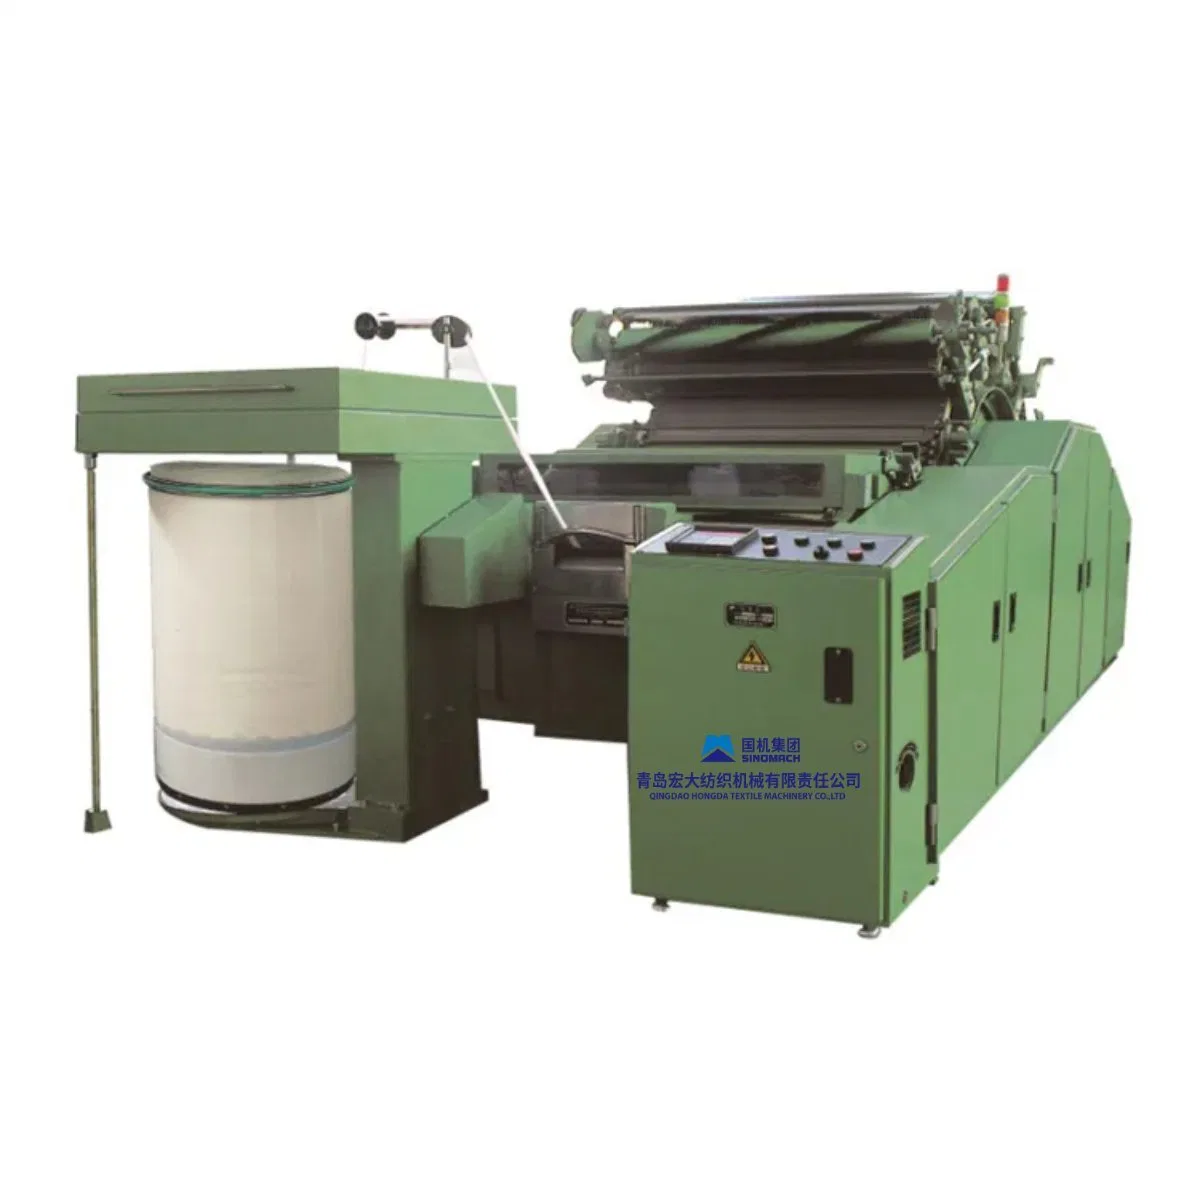 Машина для производства горячего продукта Jingwei Cotton/Chemical Fiber Carding, модель A186g